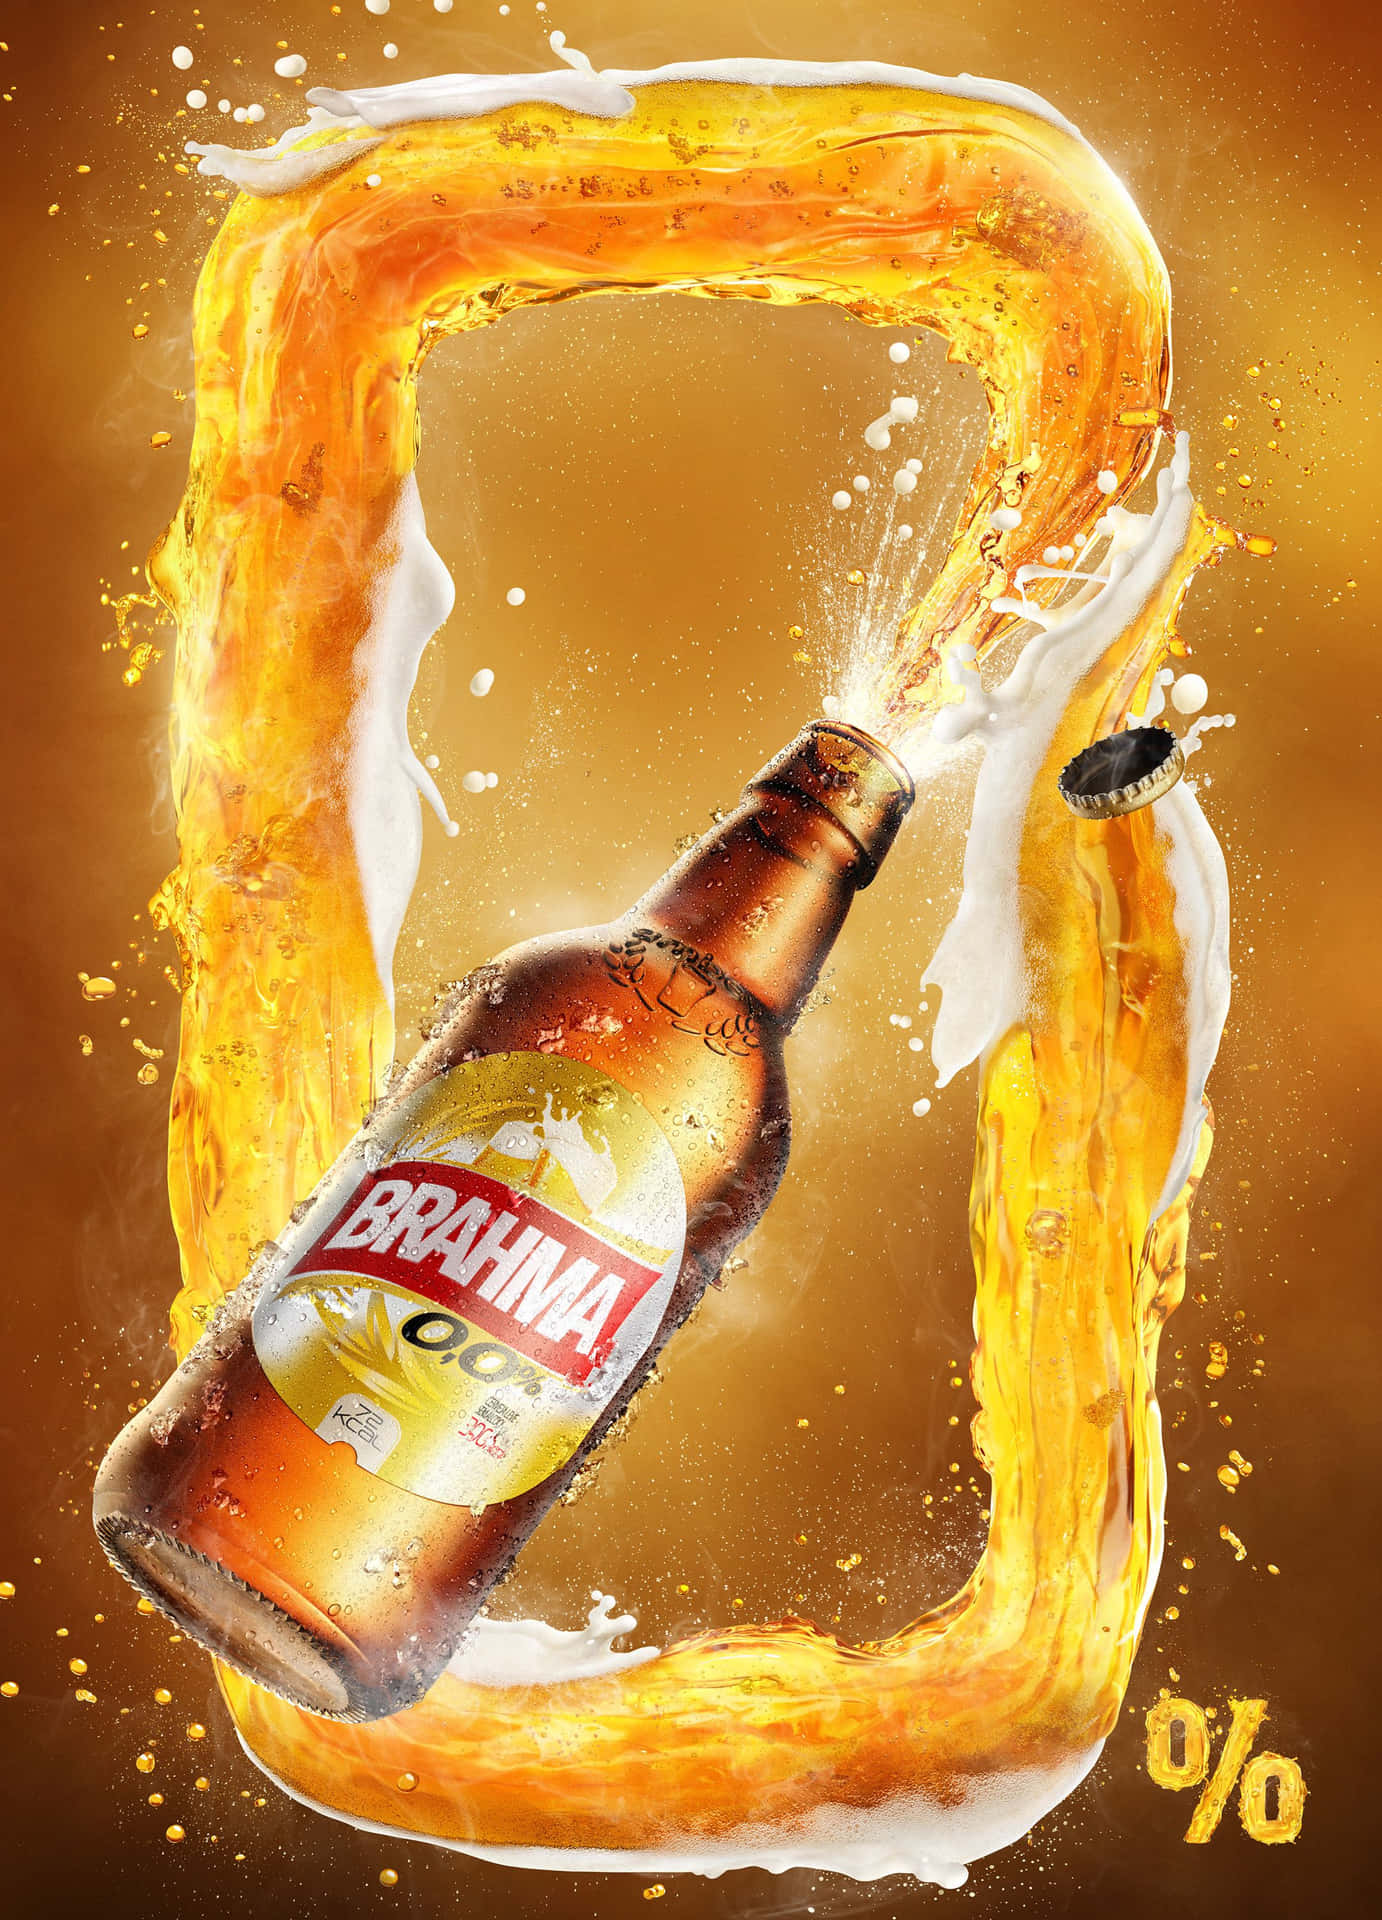 Ilustracióndel Arte De La Cerveza Brasileña Brahma Zero Con Cero Por Ciento De Alcohol. Fondo de pantalla